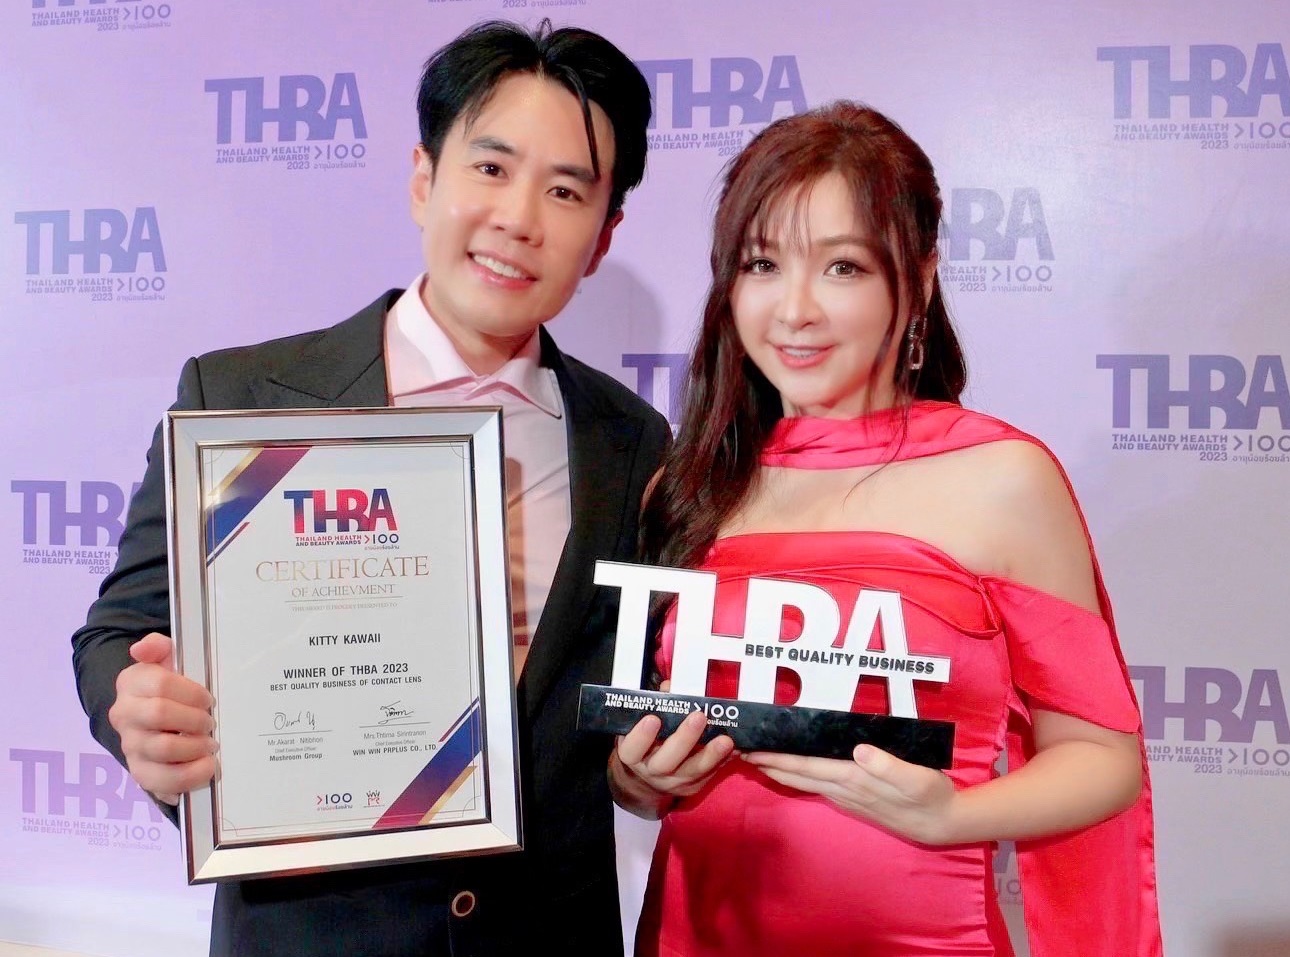 ข่าวอีเว้นท์ - คิตตี้ คาวาอิ คอนแทคเลนส์ รับรางวัล “Best Quality Business Of Contact Lens” ในงาน “THAILAND HEALTH AND BEAUTY AWARDS 2023”